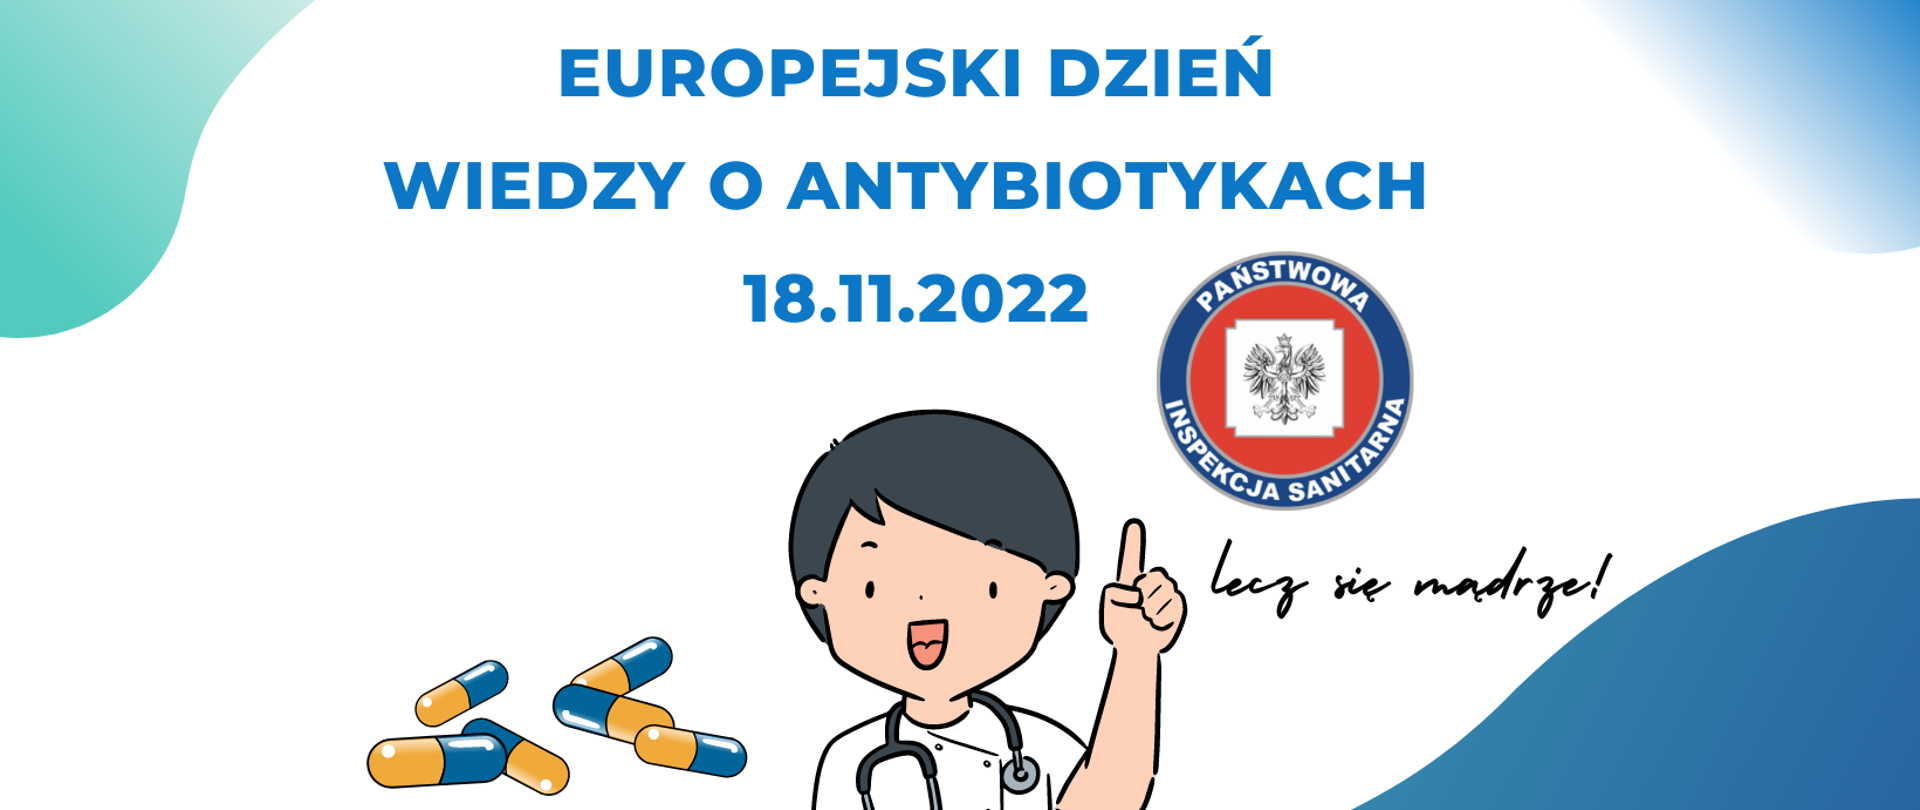 Europejski Dzień Wiedzy o Antybiotykach - logo
